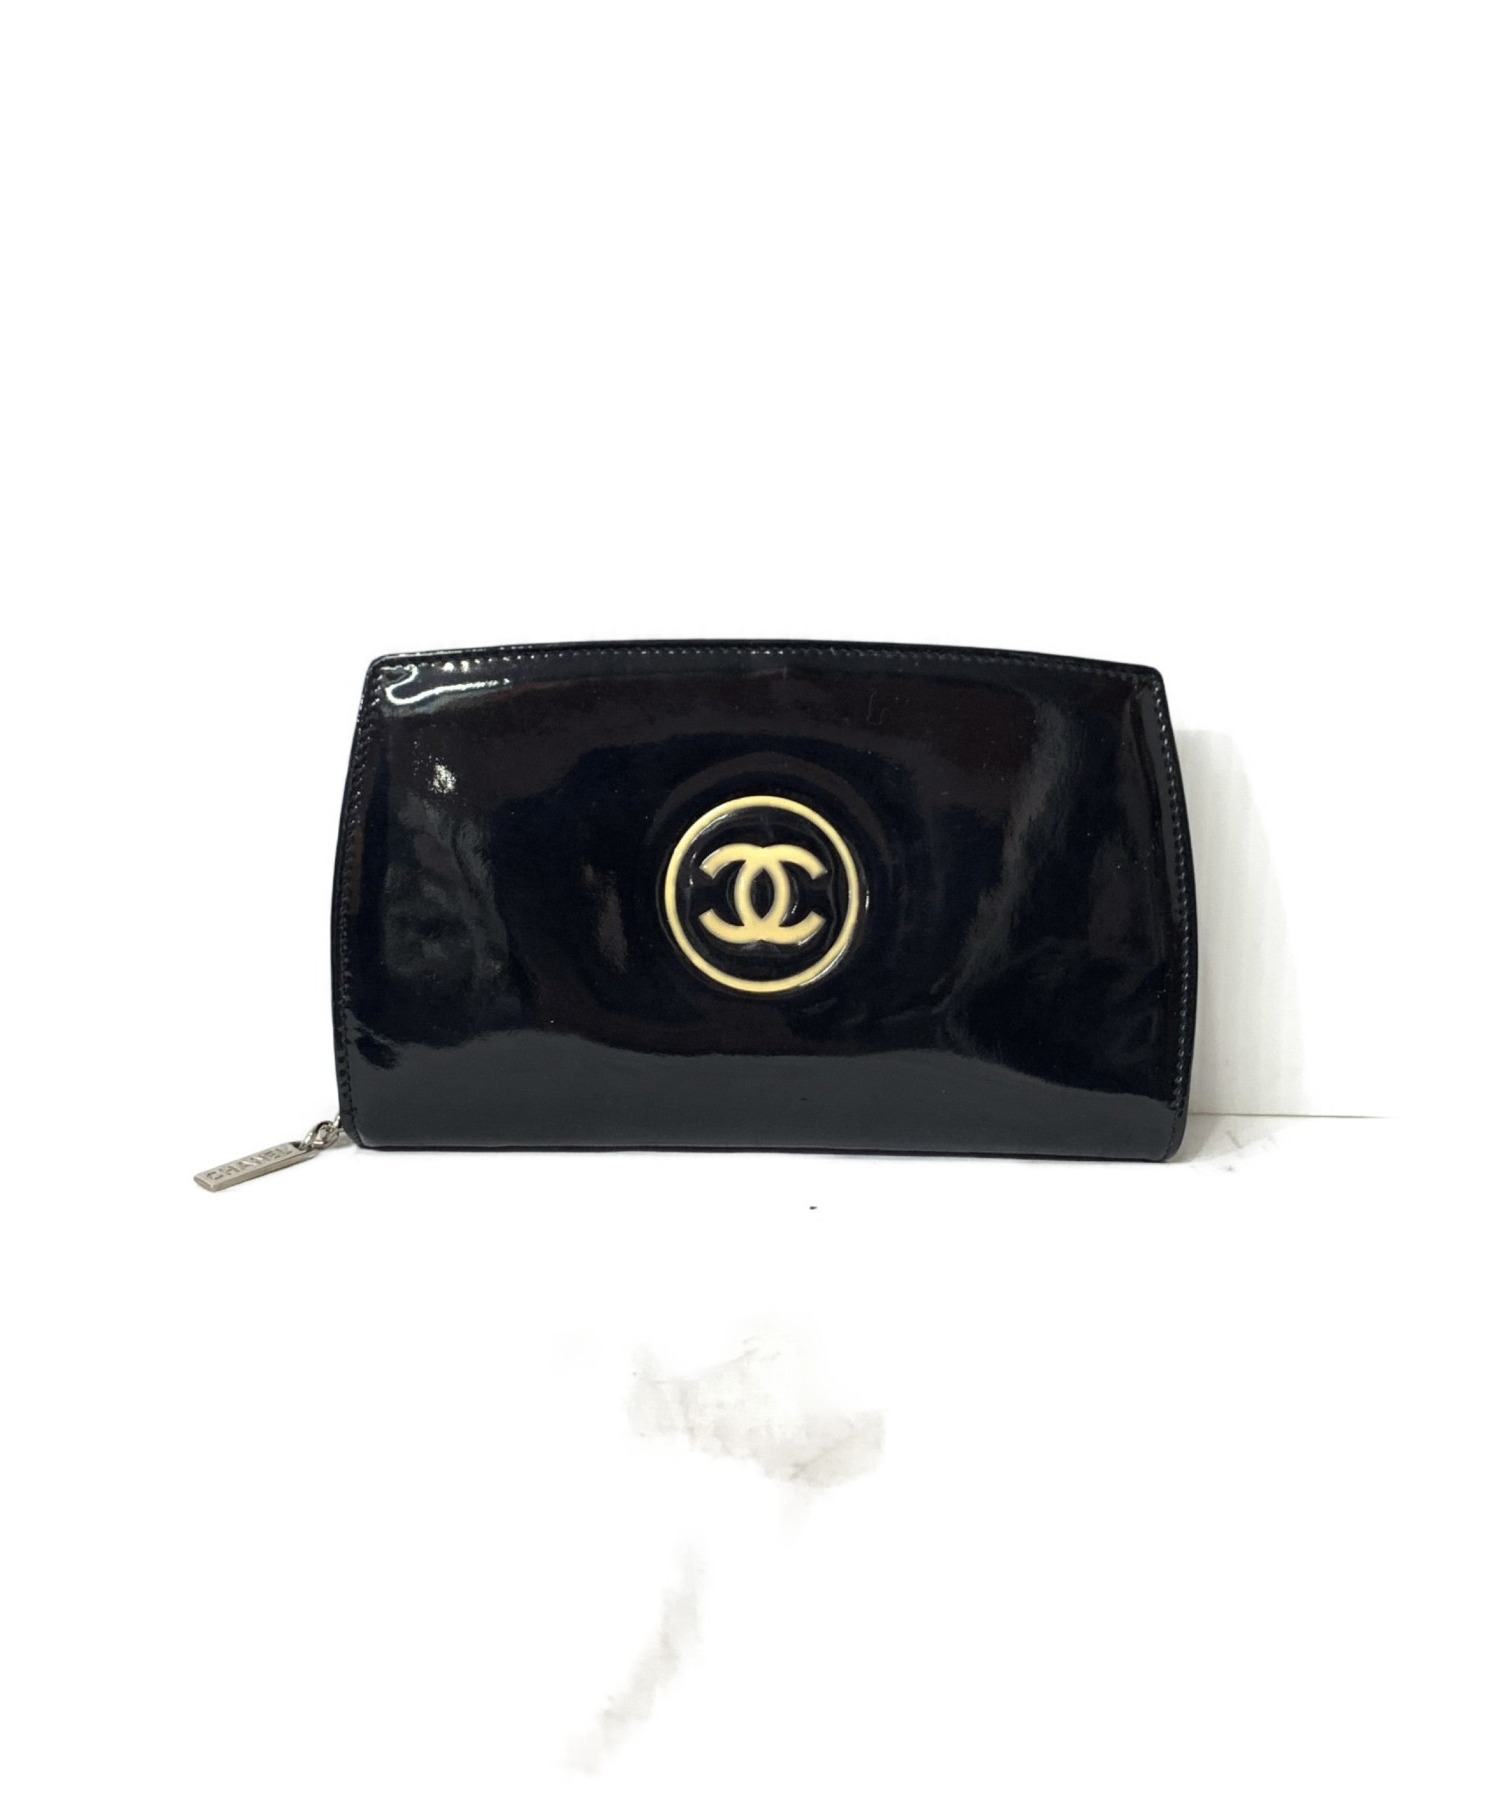 CHANEL (シャネル) ココマーク エナメル財布 ブラック メイクアップライン 製造番号 13211884